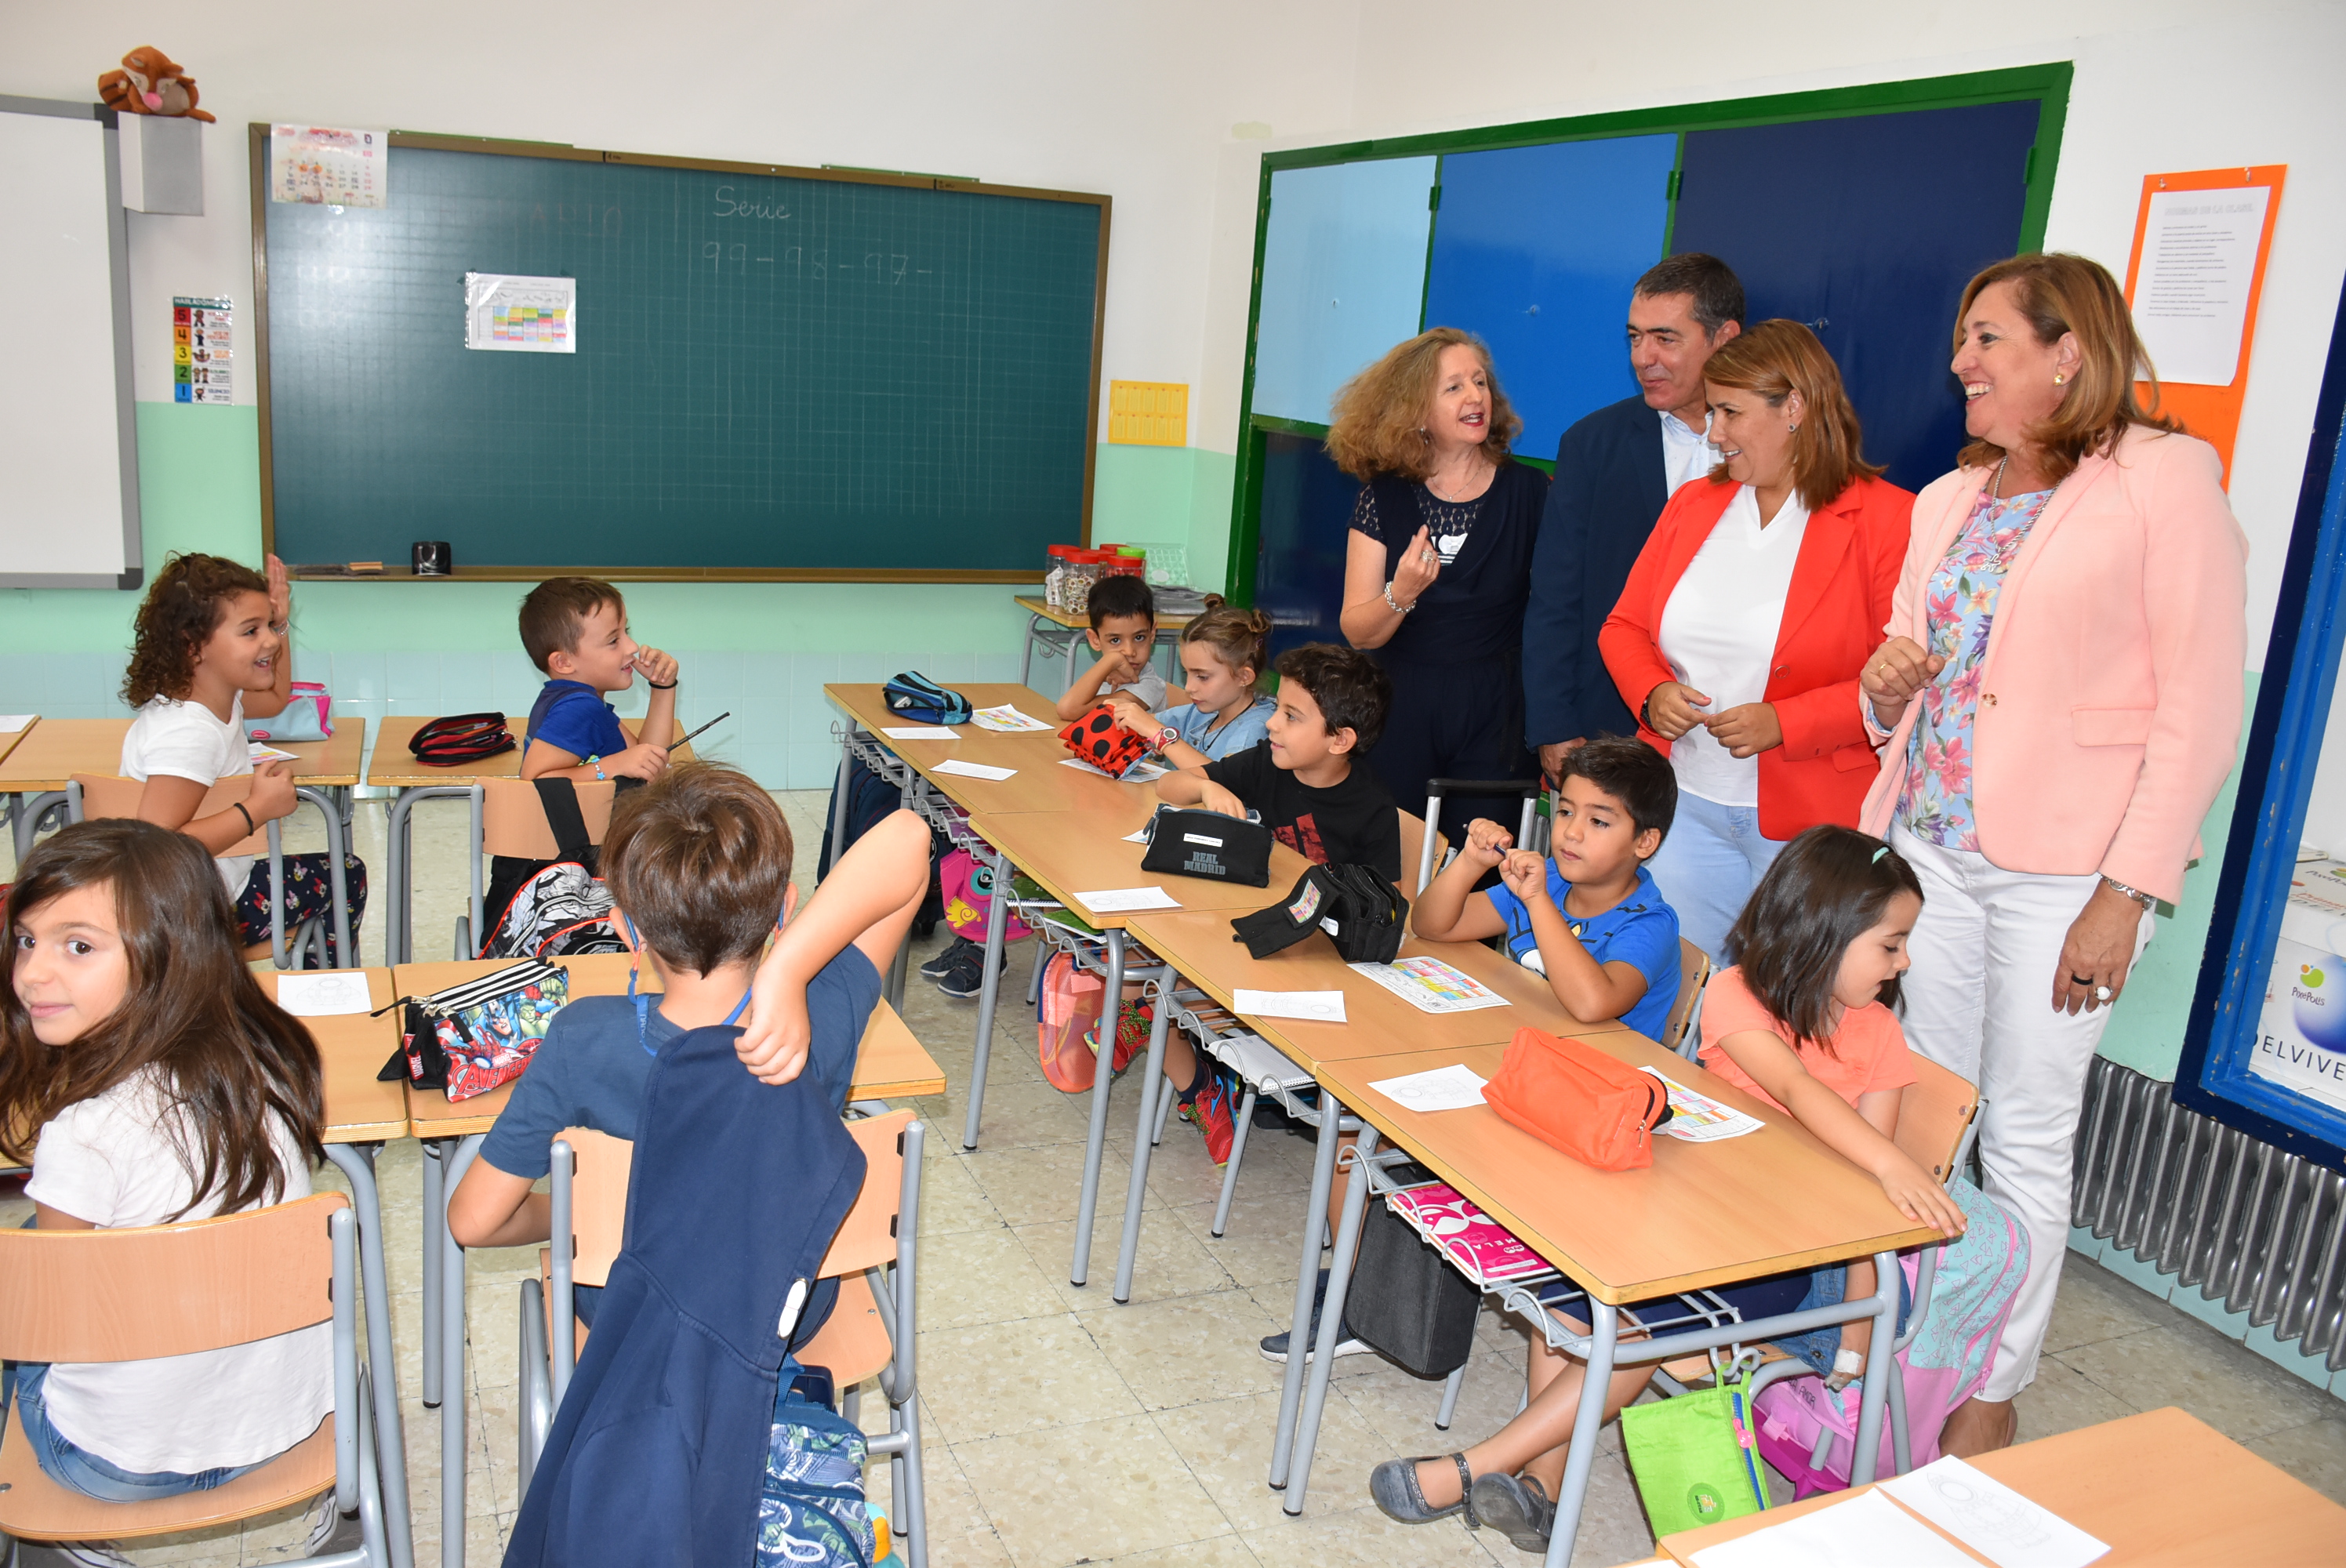 La alcaldesa de Talavera ha agradecido la presencia del Gobierno regional en materia educativa